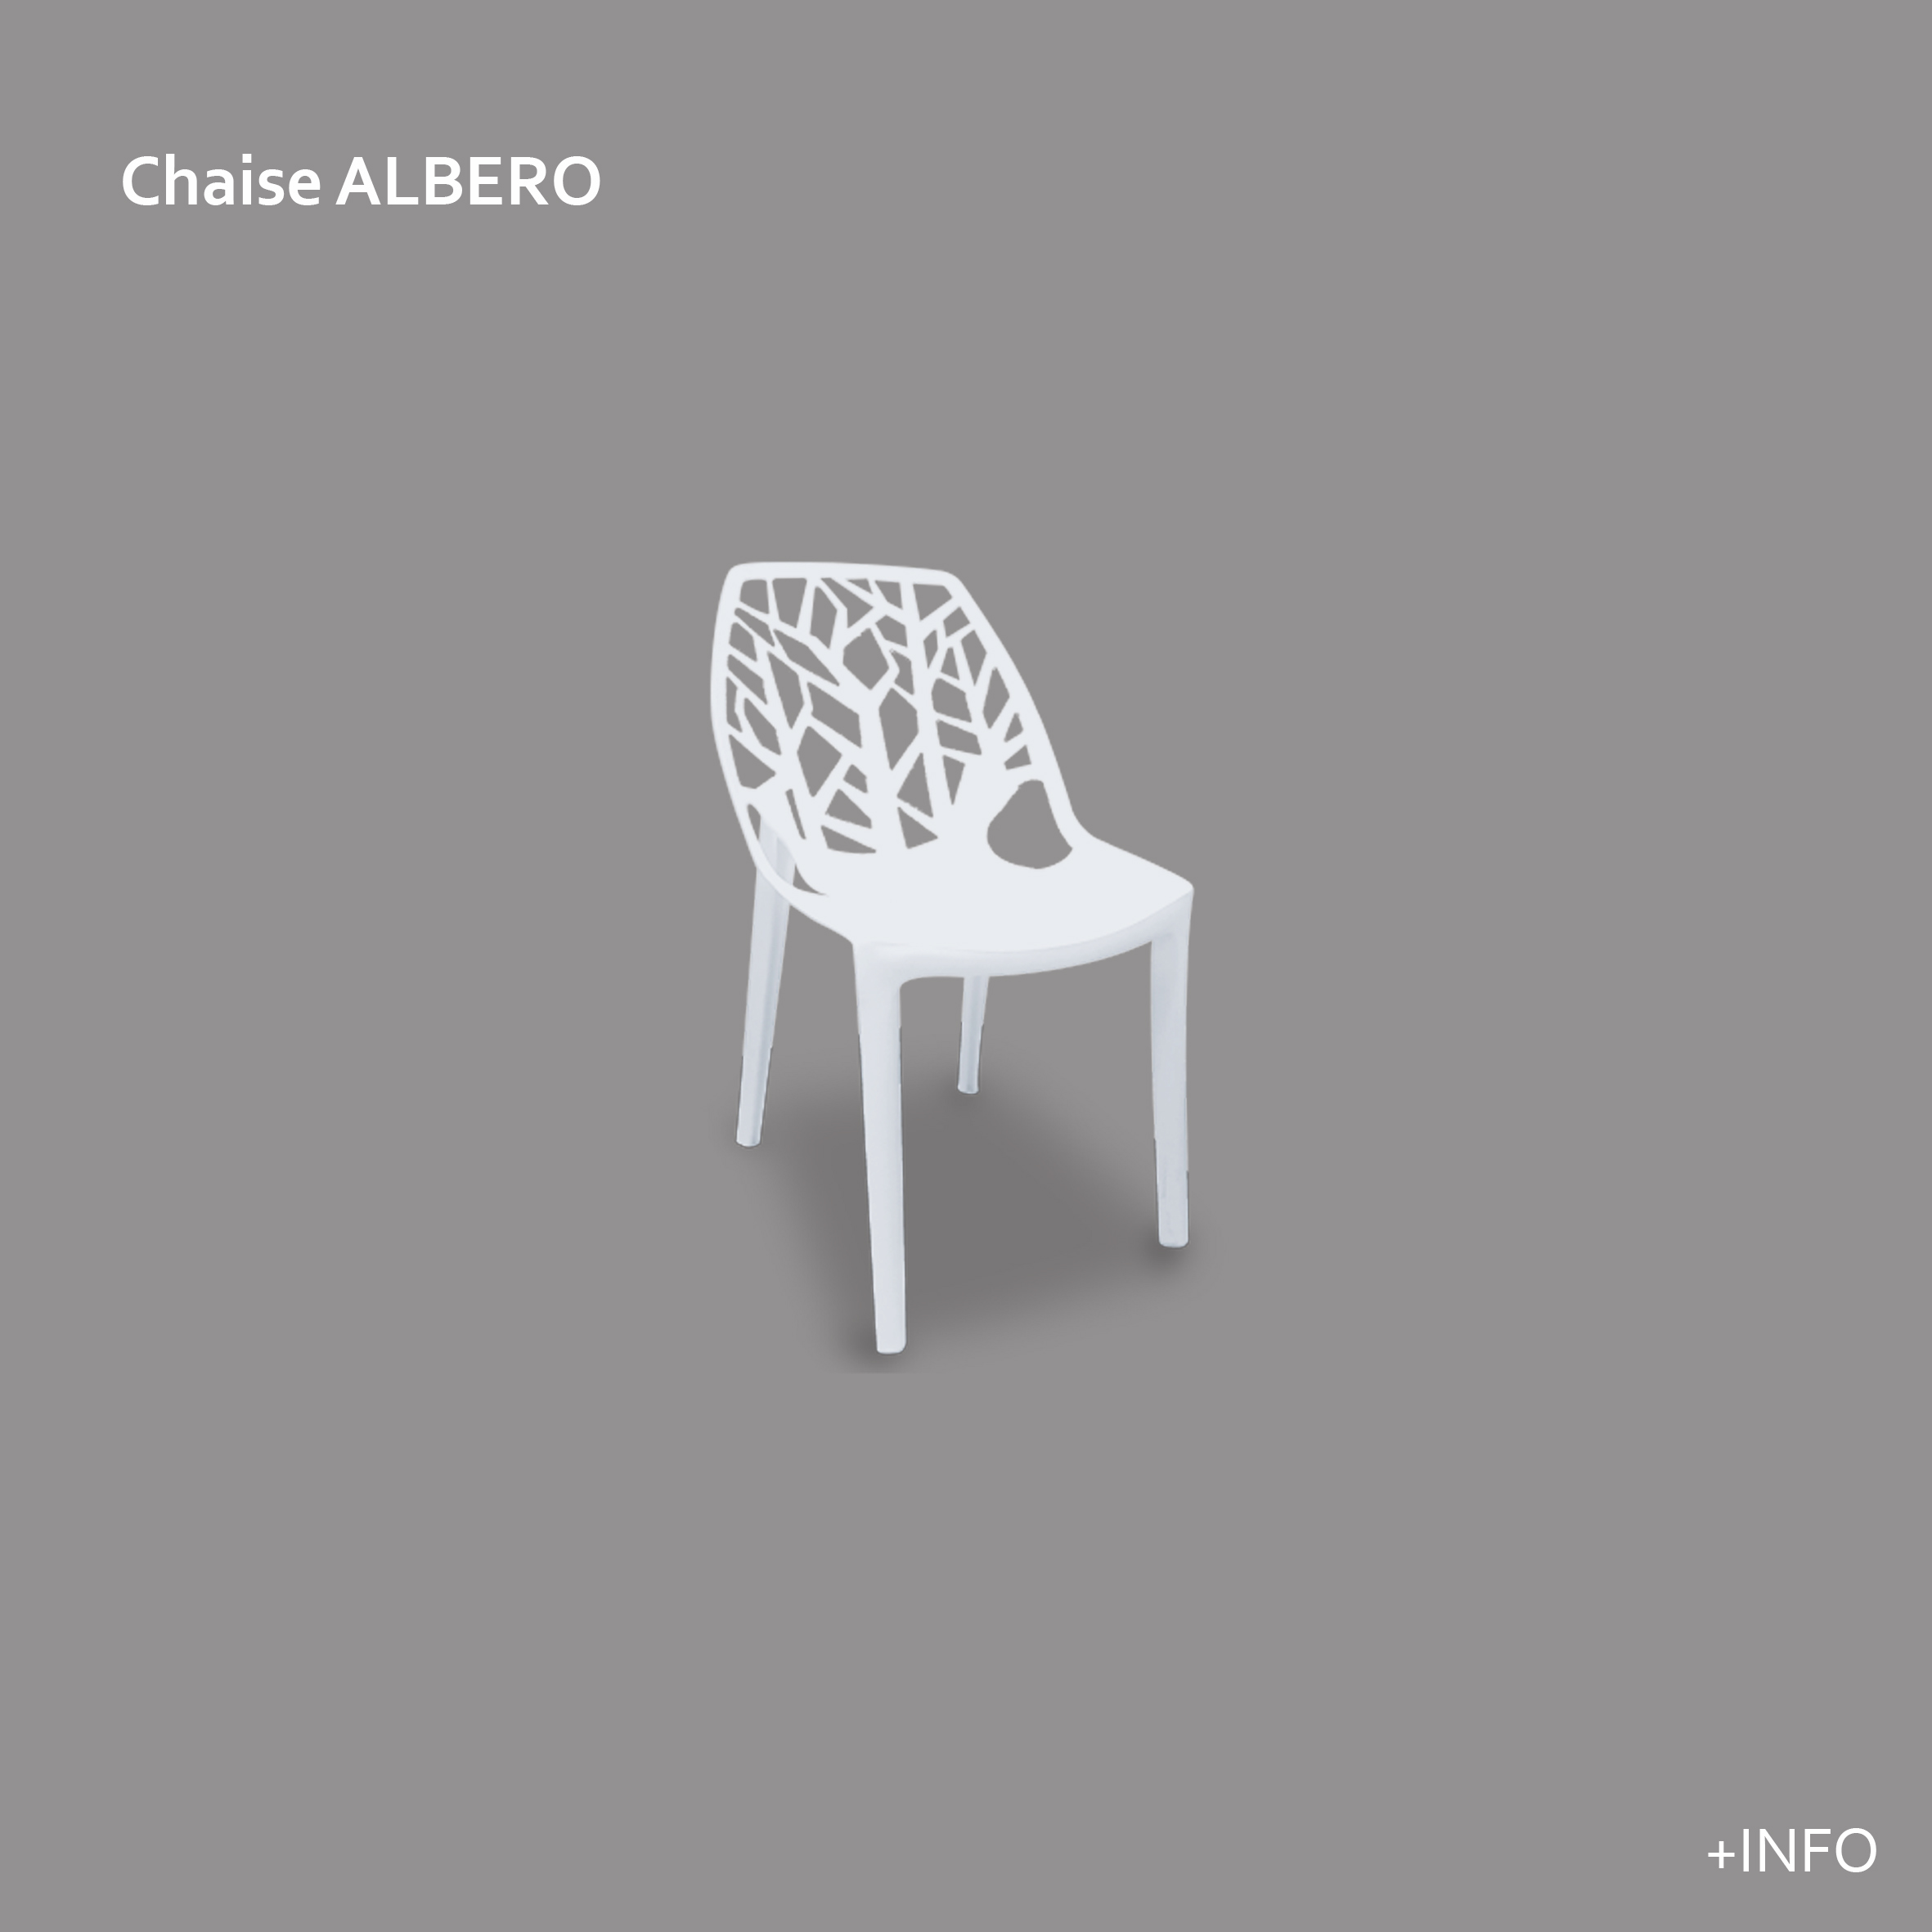 Albero chaise